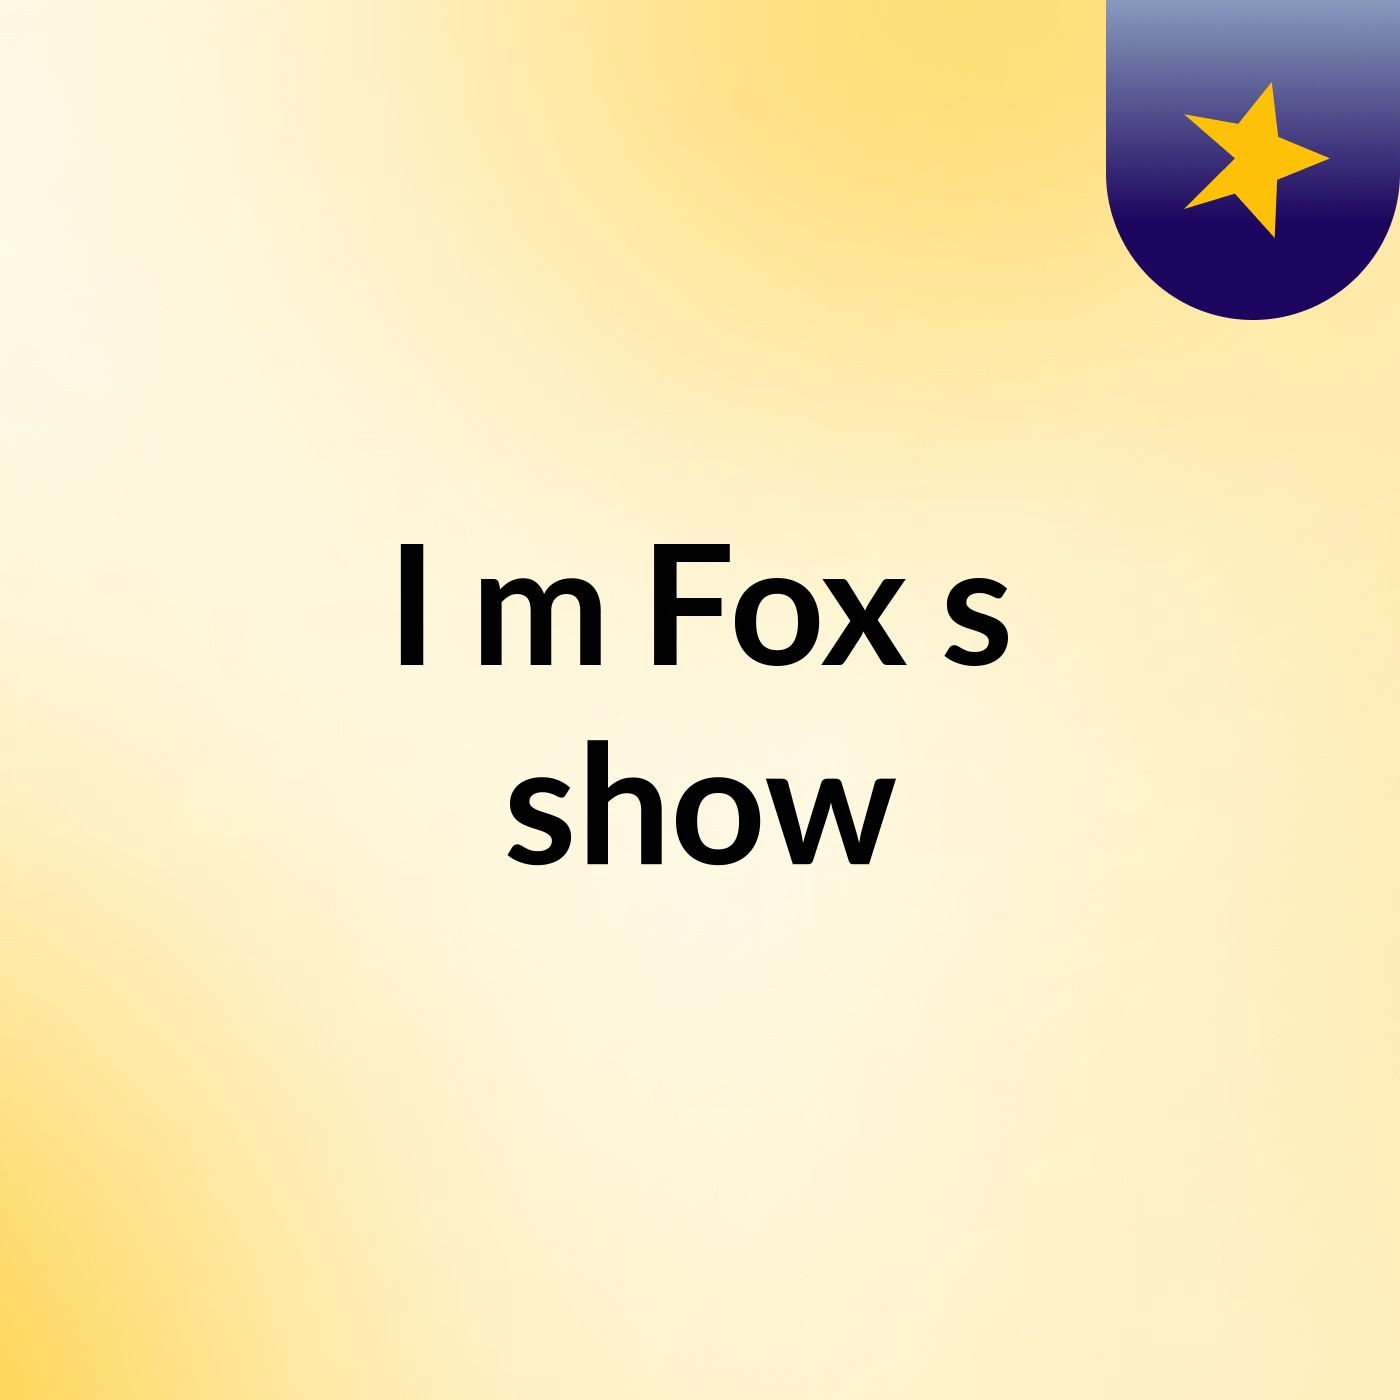 I'm Fox's show